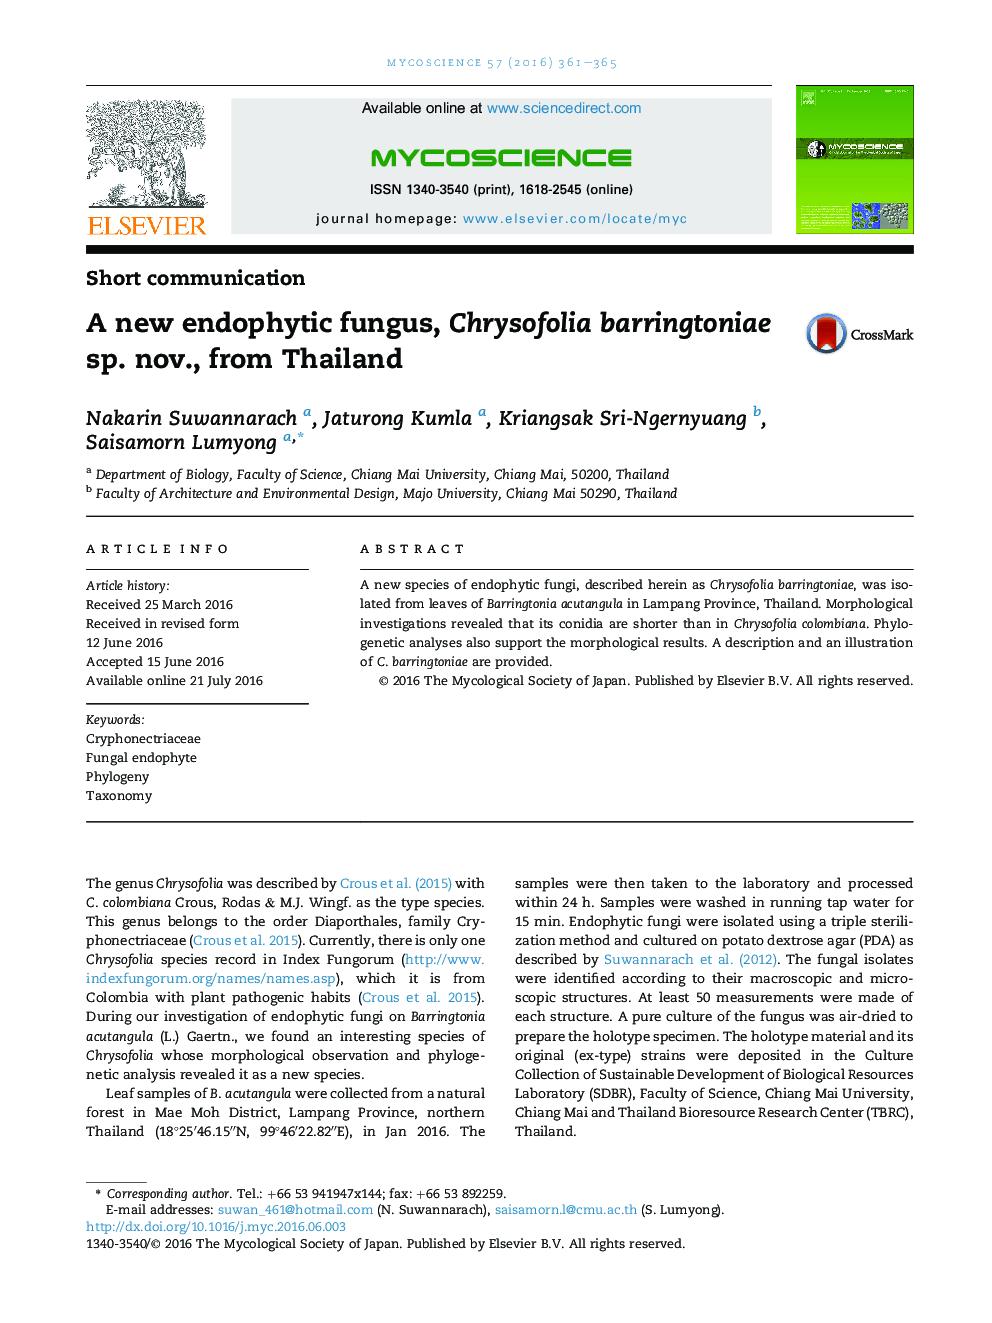 قارچ های اندوفیت جدید، Chrysofolia SP barringtoniae. Nov، از تایلند